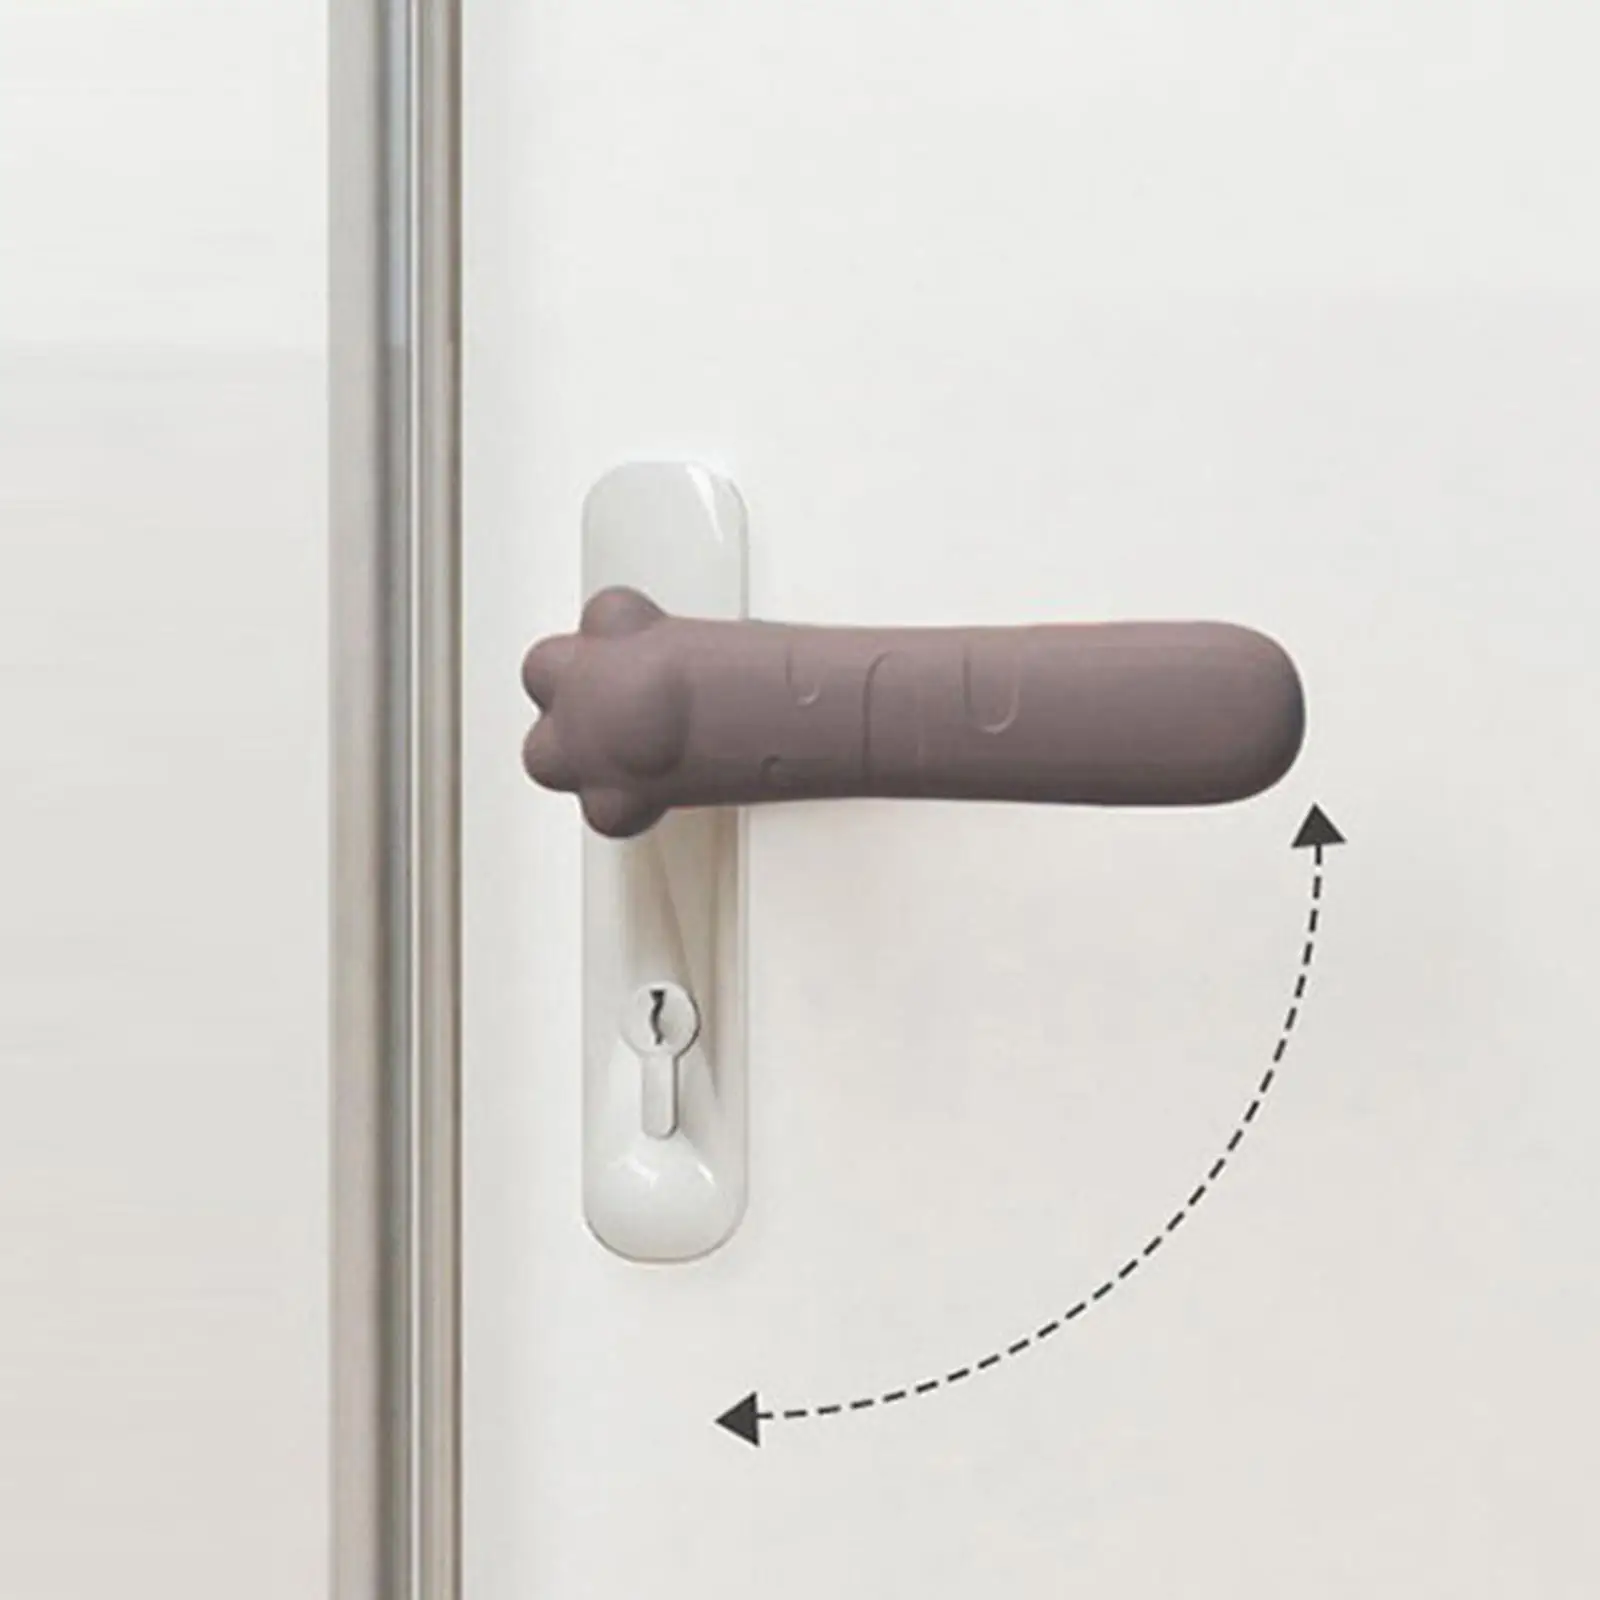 Door Protective Cover, Sleeve Anti Collision Door Doorknob Cover, for Kindergarten Home